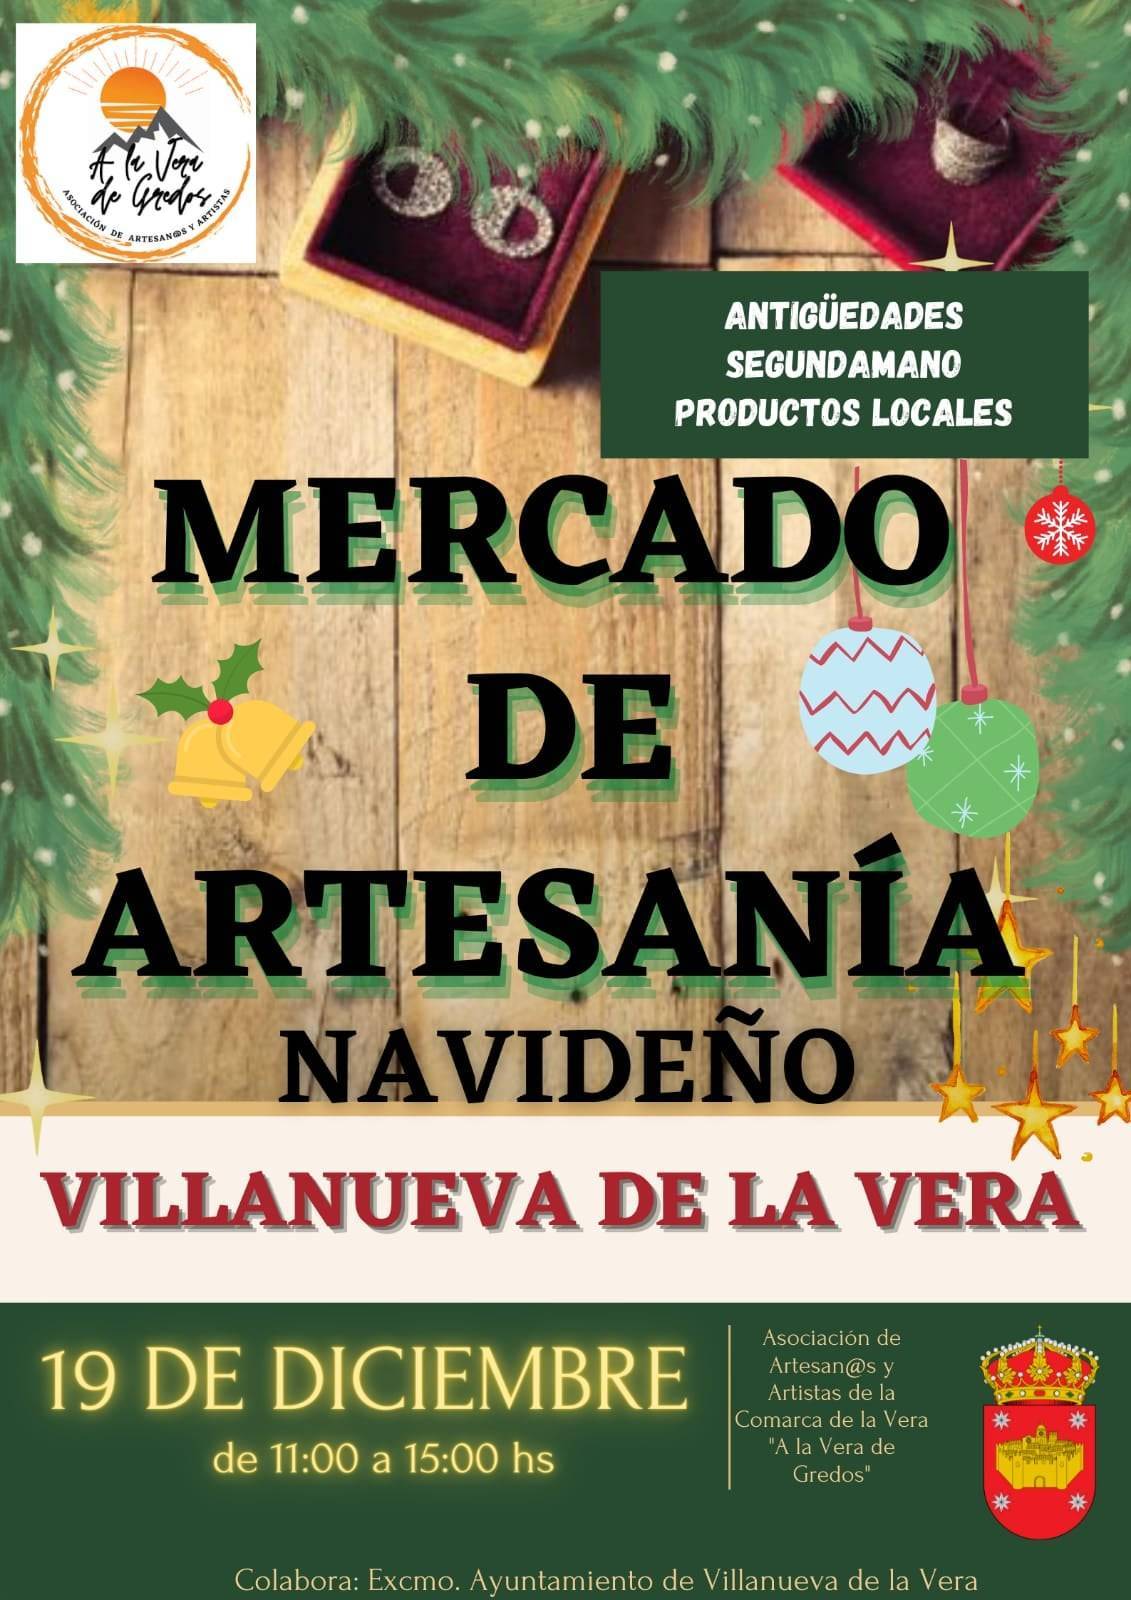 Mercado de artesanía navideño (2021) - Villanueva de la Vera (Cáceres)